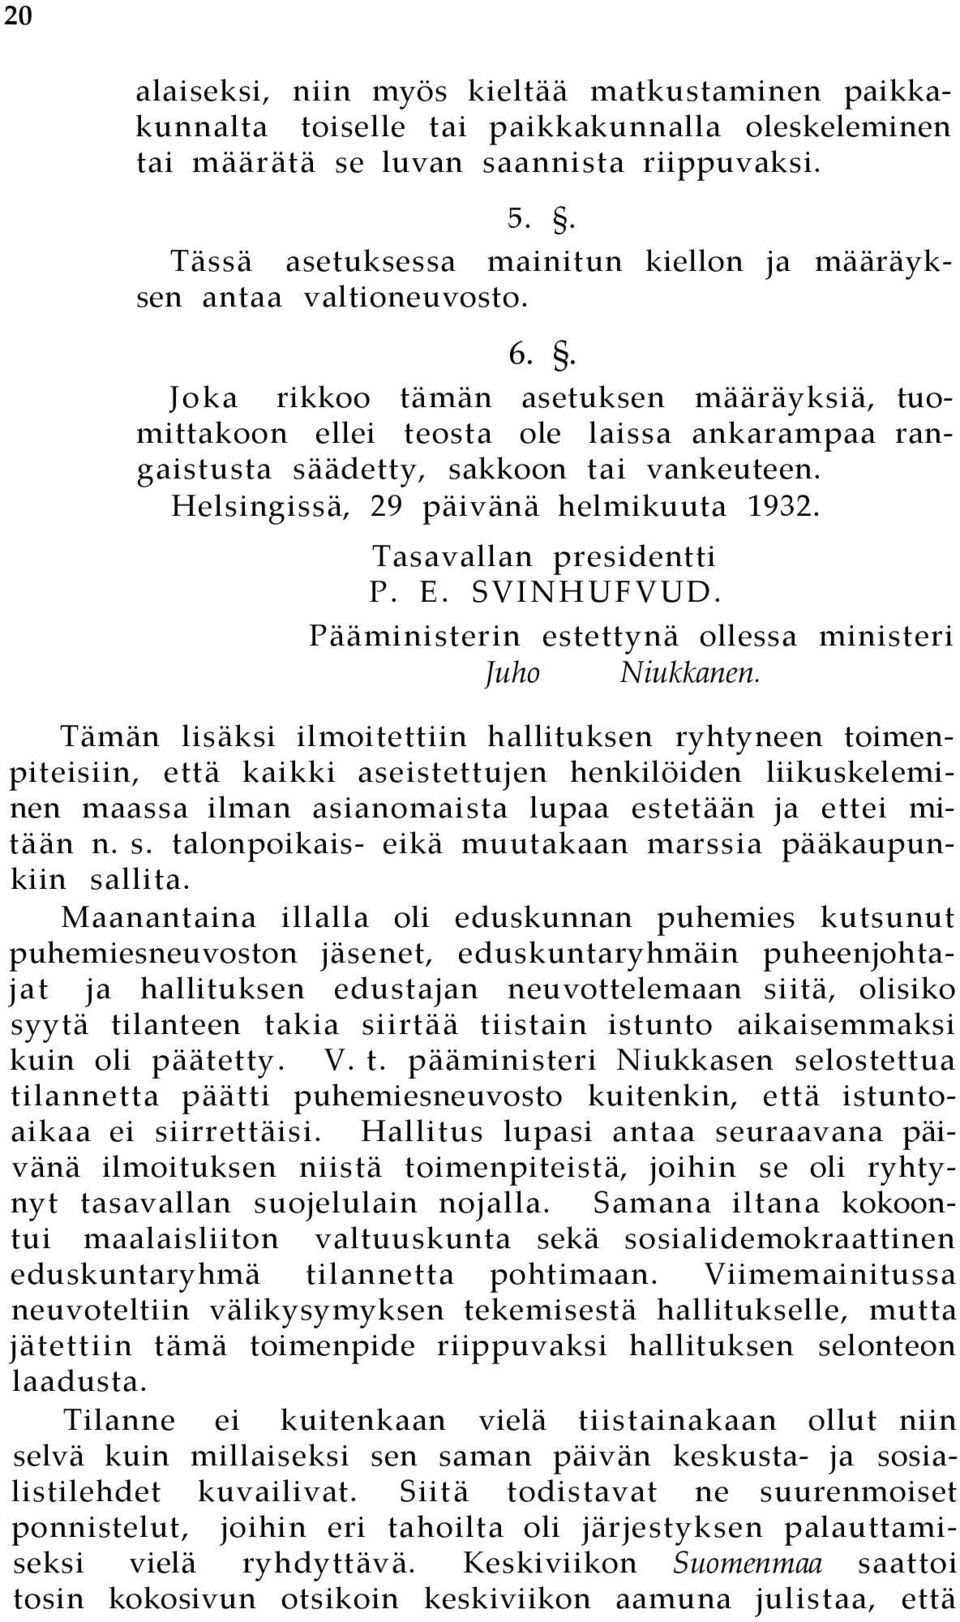 . Joka rikkoo tämän asetuksen määräyksiä, tuomittakoon ellei teosta ole laissa ankarampaa rangaistusta säädetty, sakkoon tai vankeuteen. Helsingissä, 29 päivänä helmikuuta 1932.